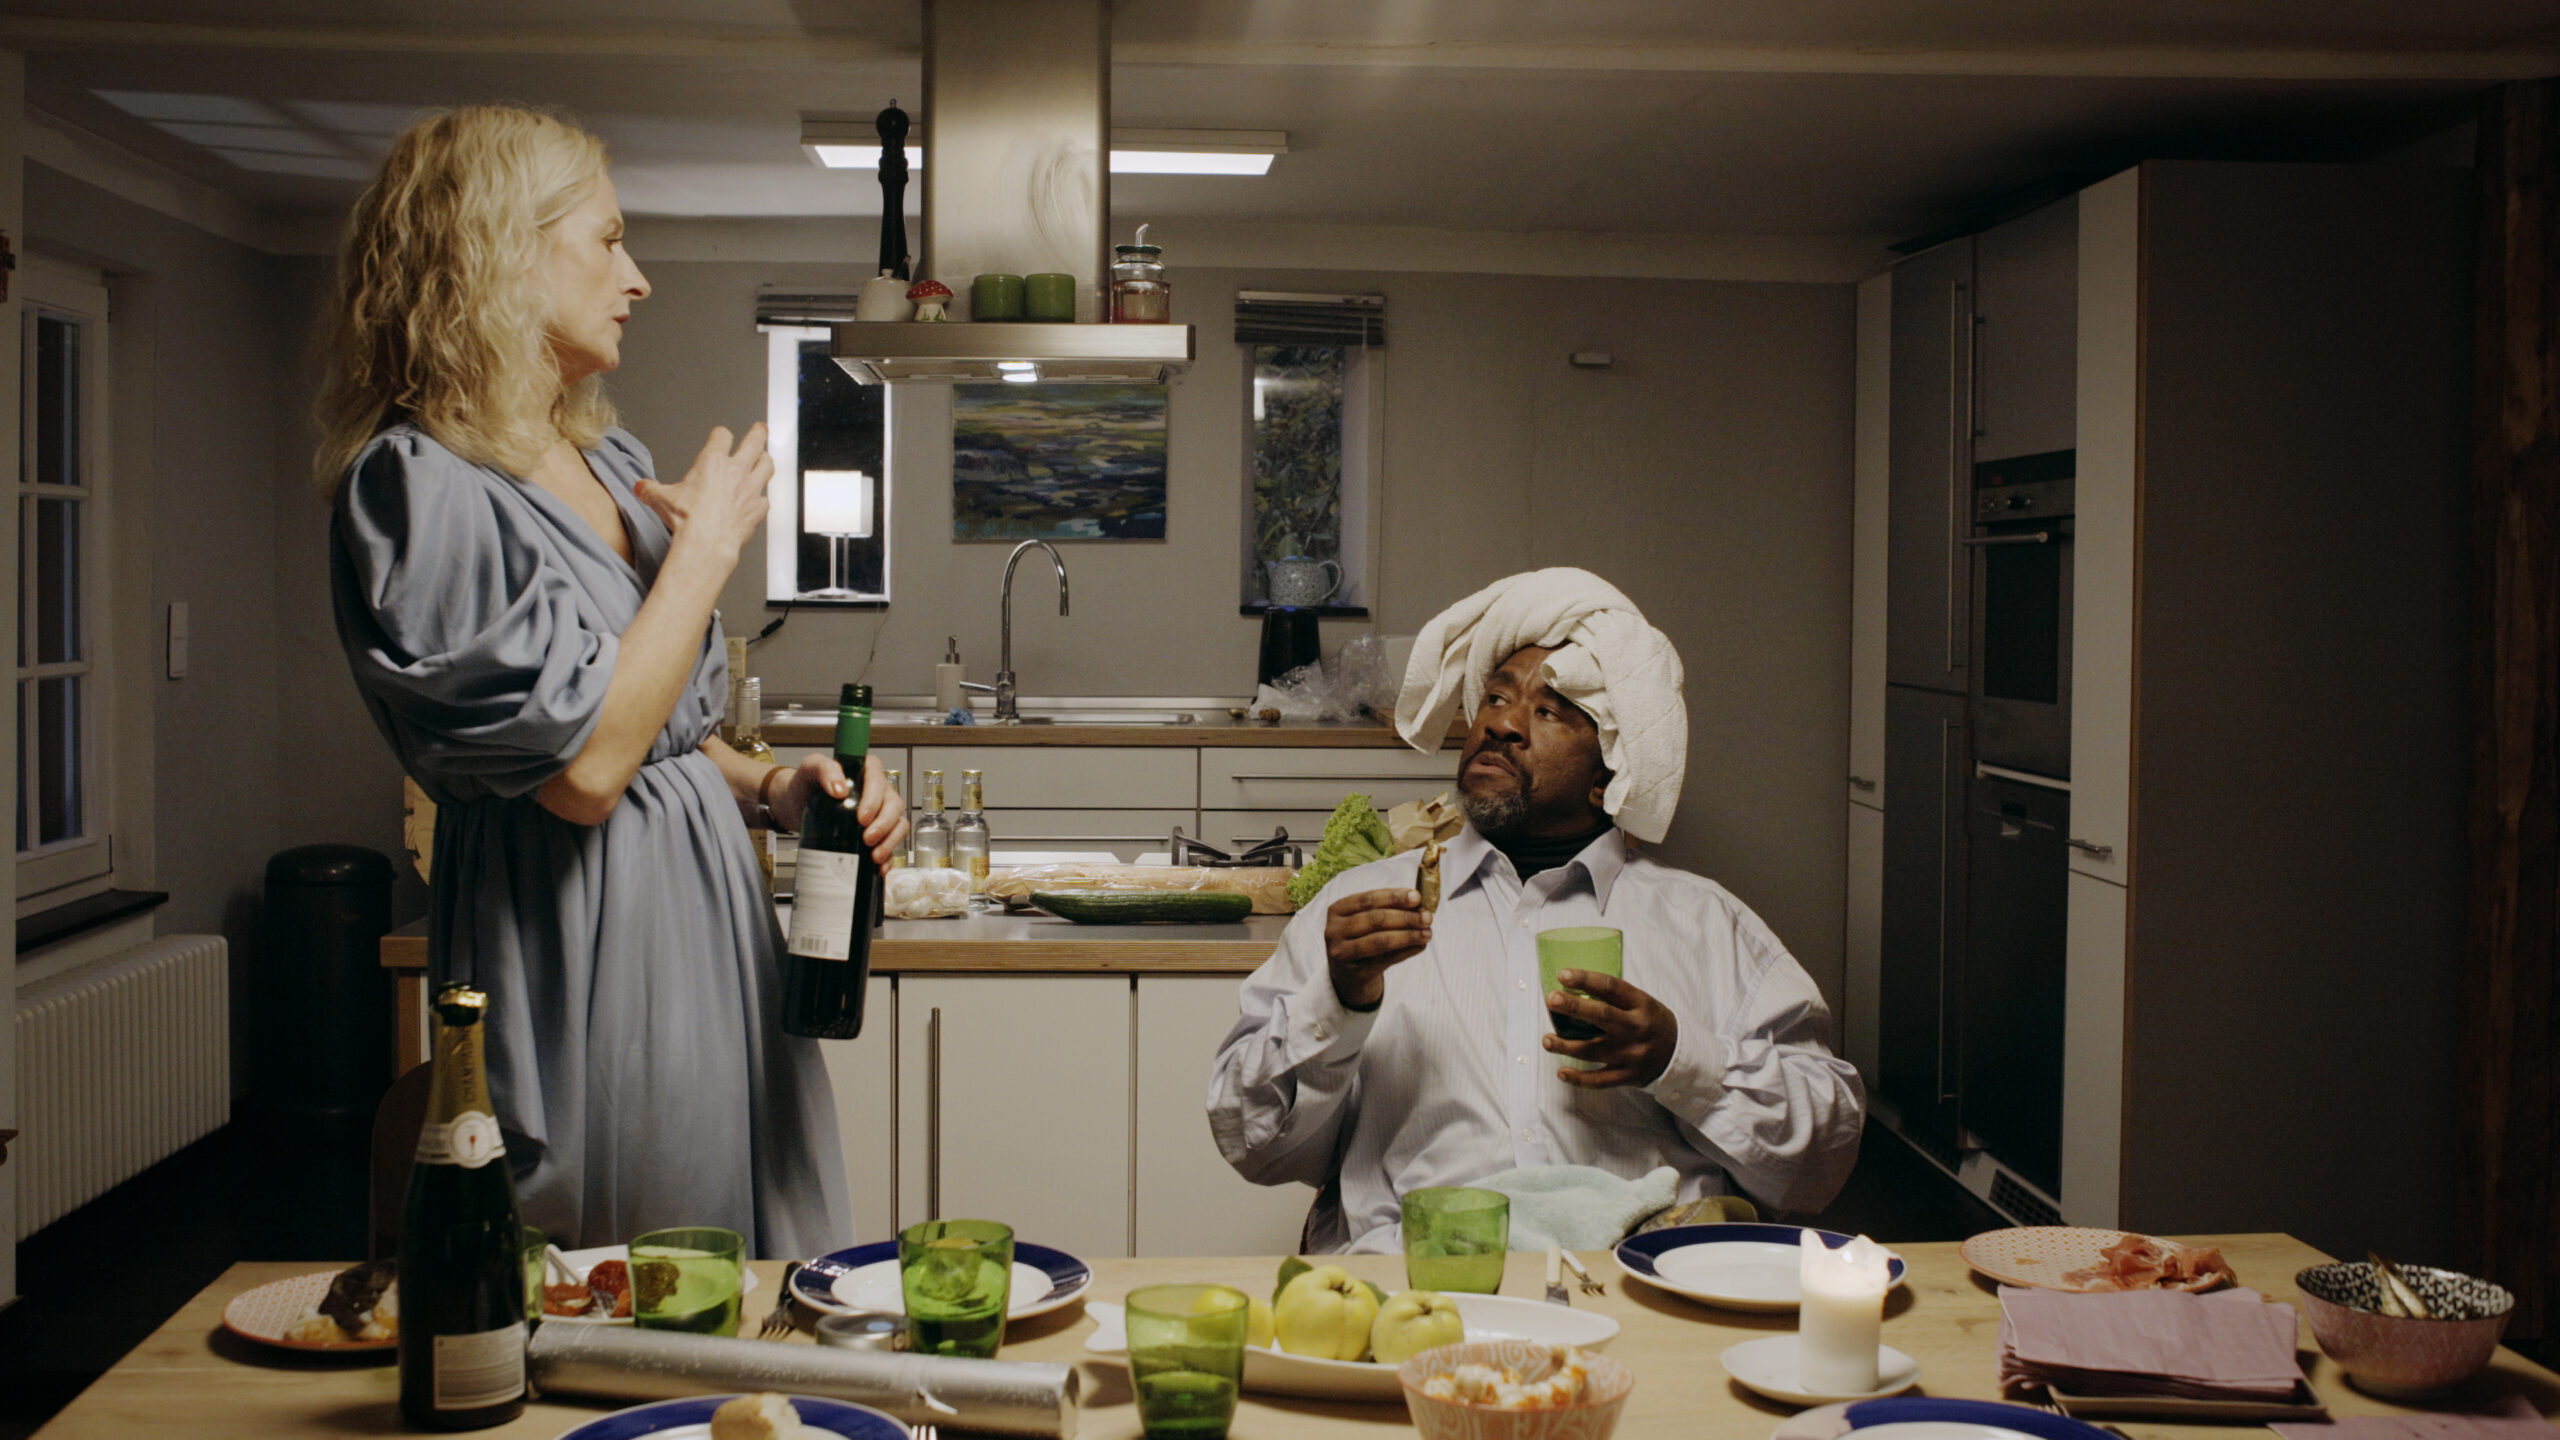 Voller Esstisch in der Küche, eine Frau steht links mit einer Flasche Wein, rechts sitzt ein Mann und sieht sie an